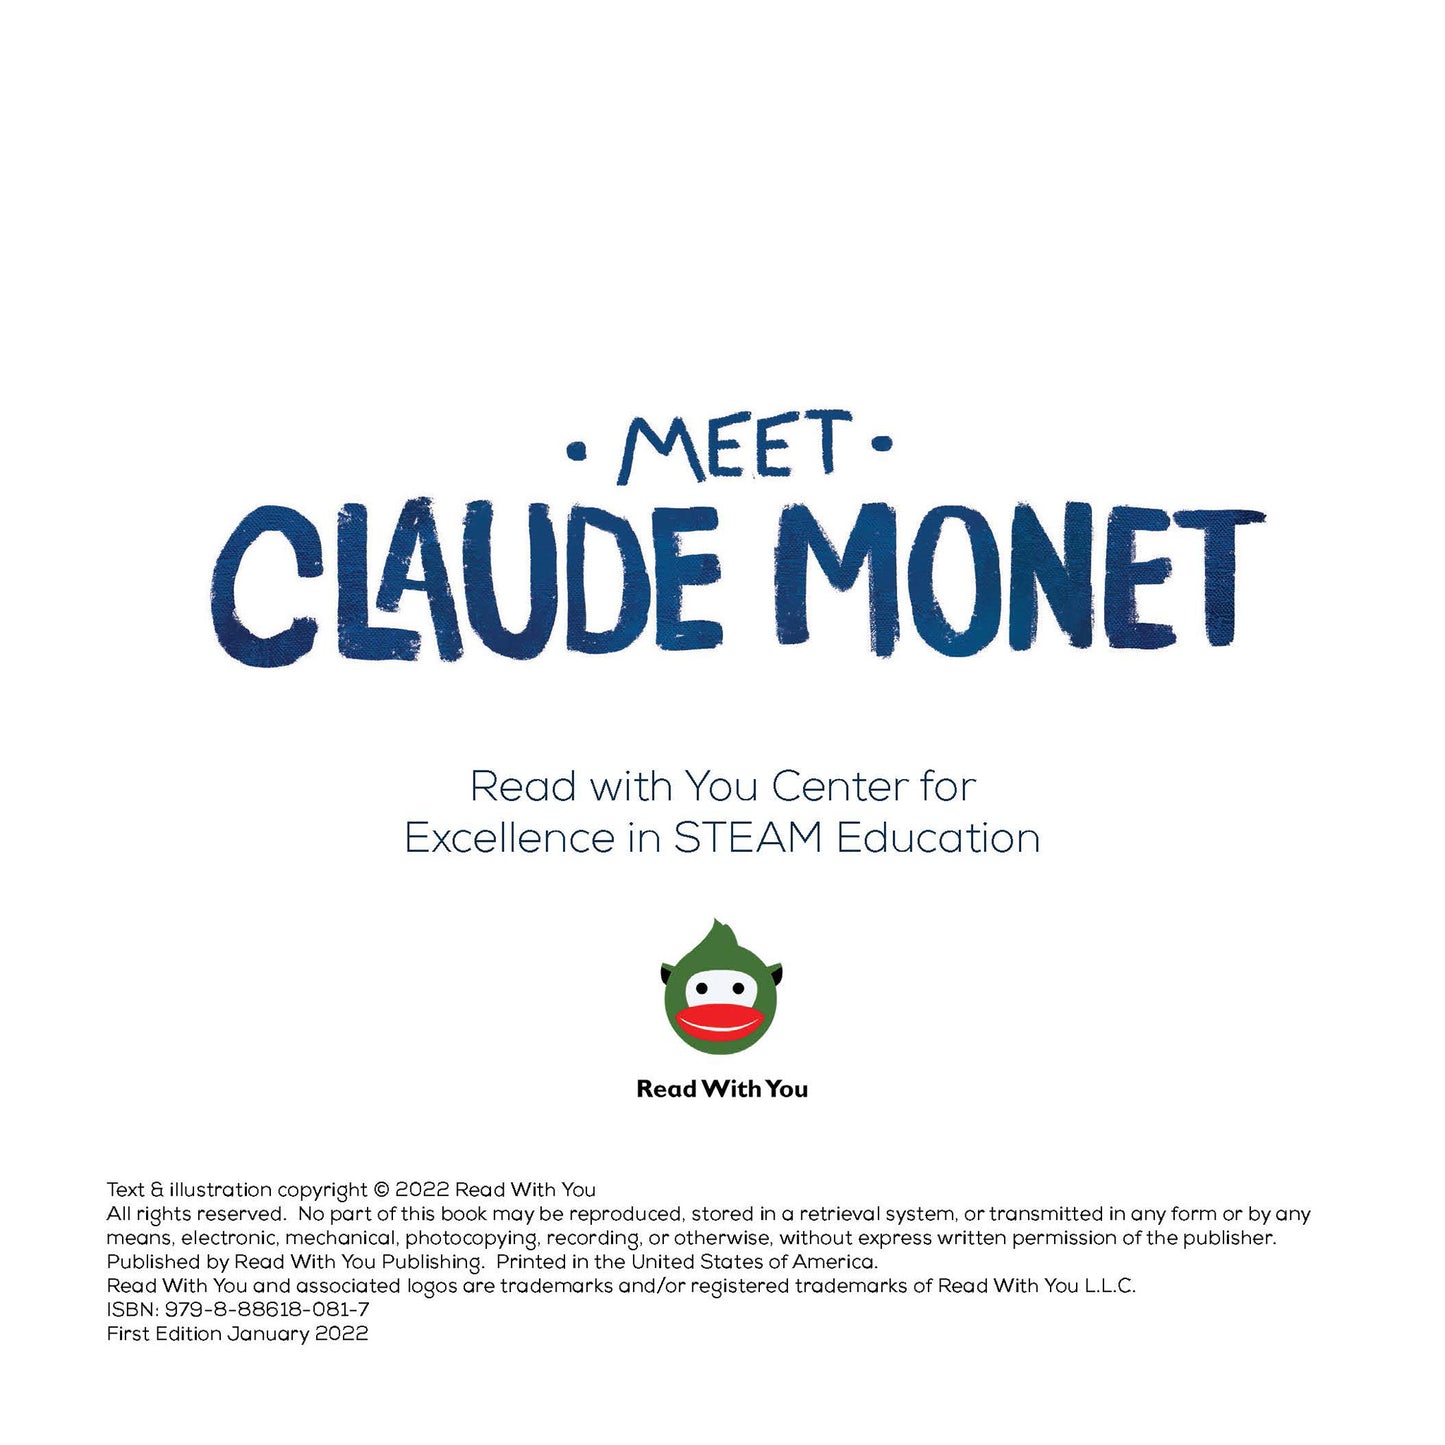 Meet Claude Monet